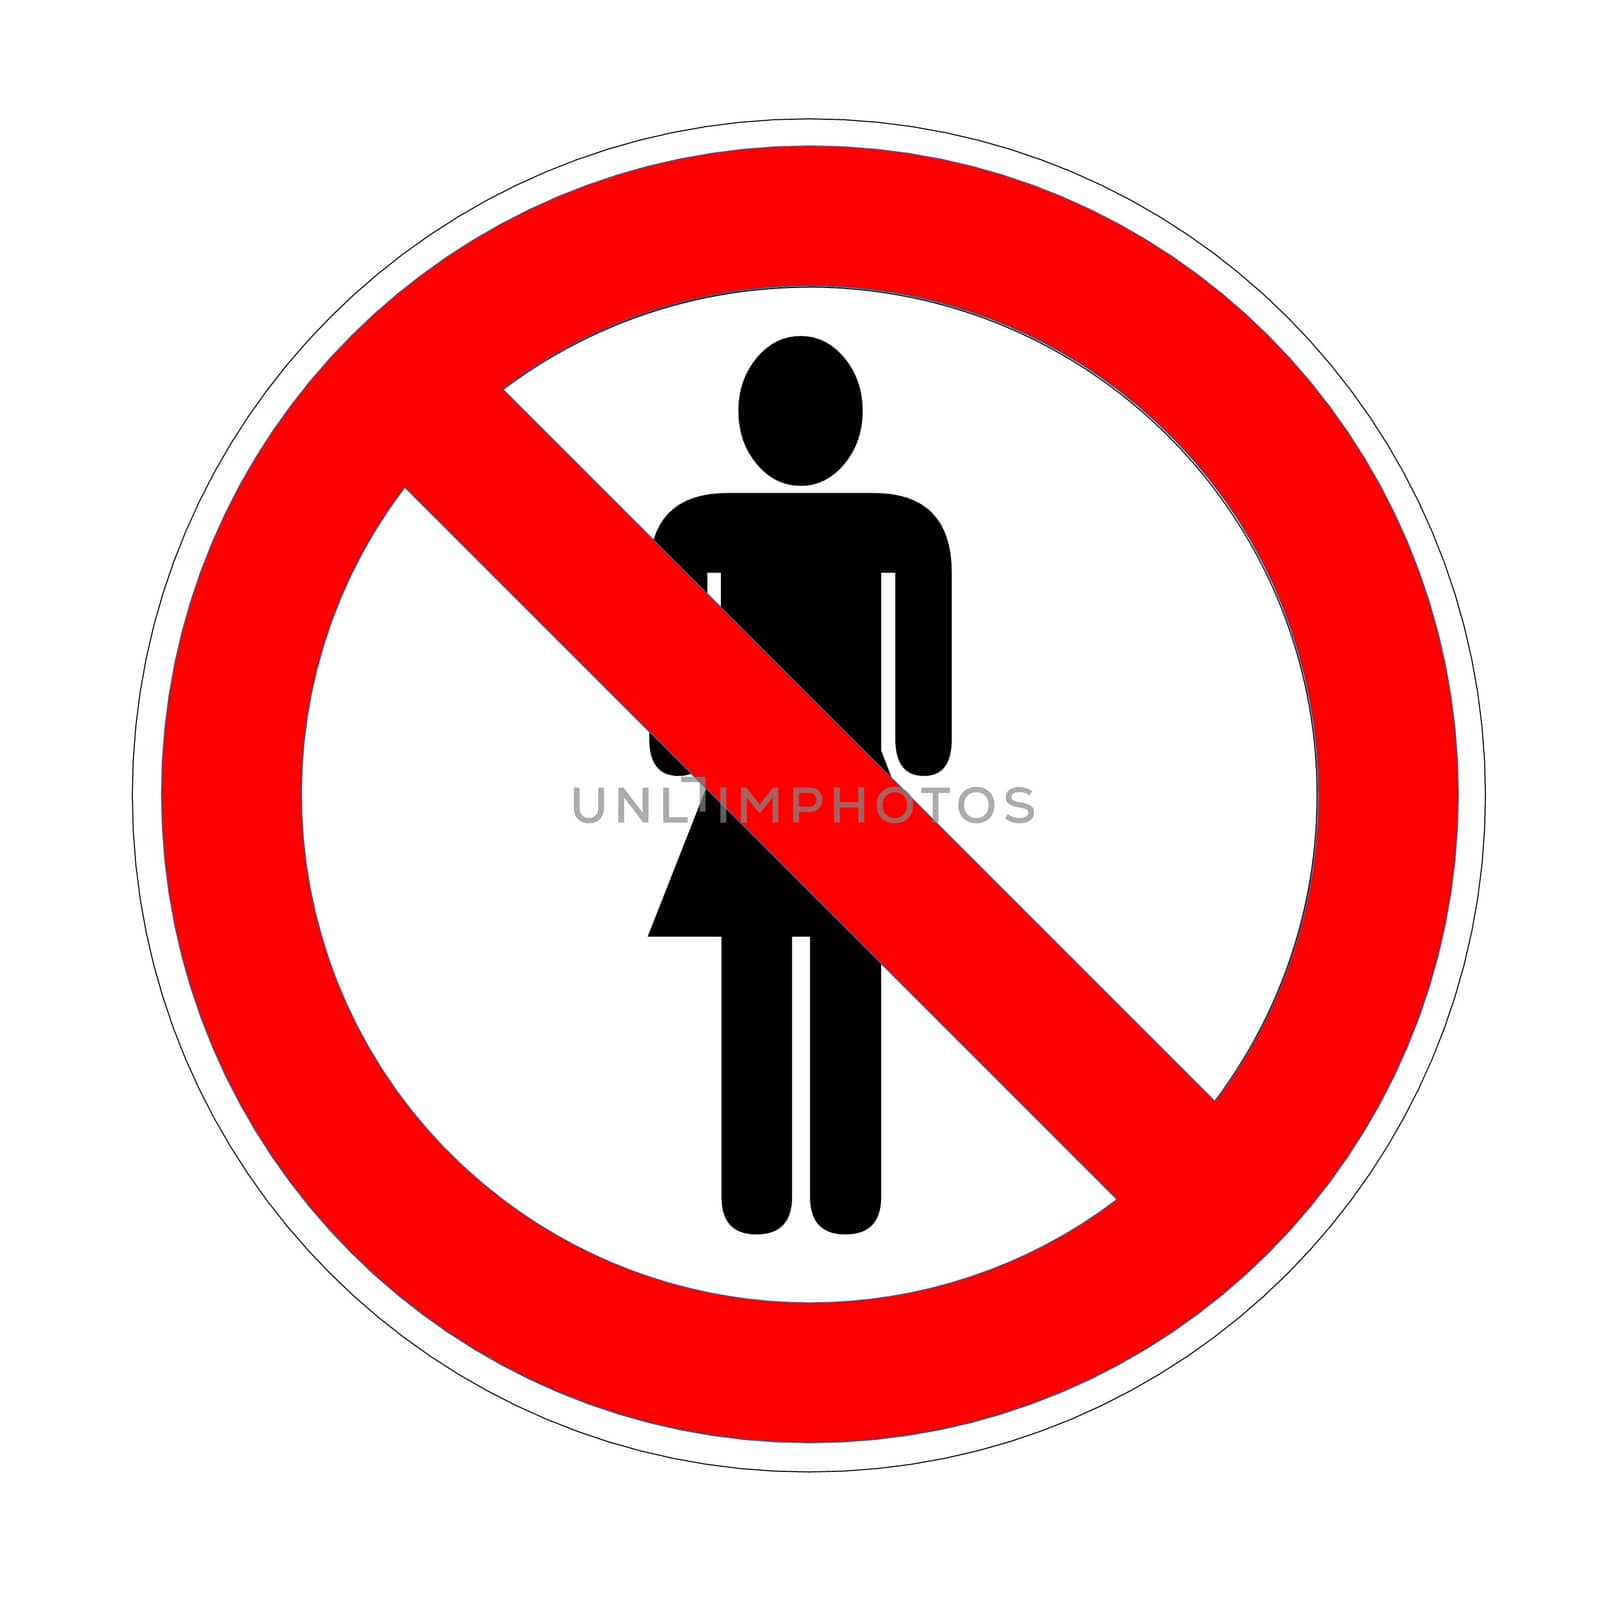 No trespassing sign females by Elenaphotos21